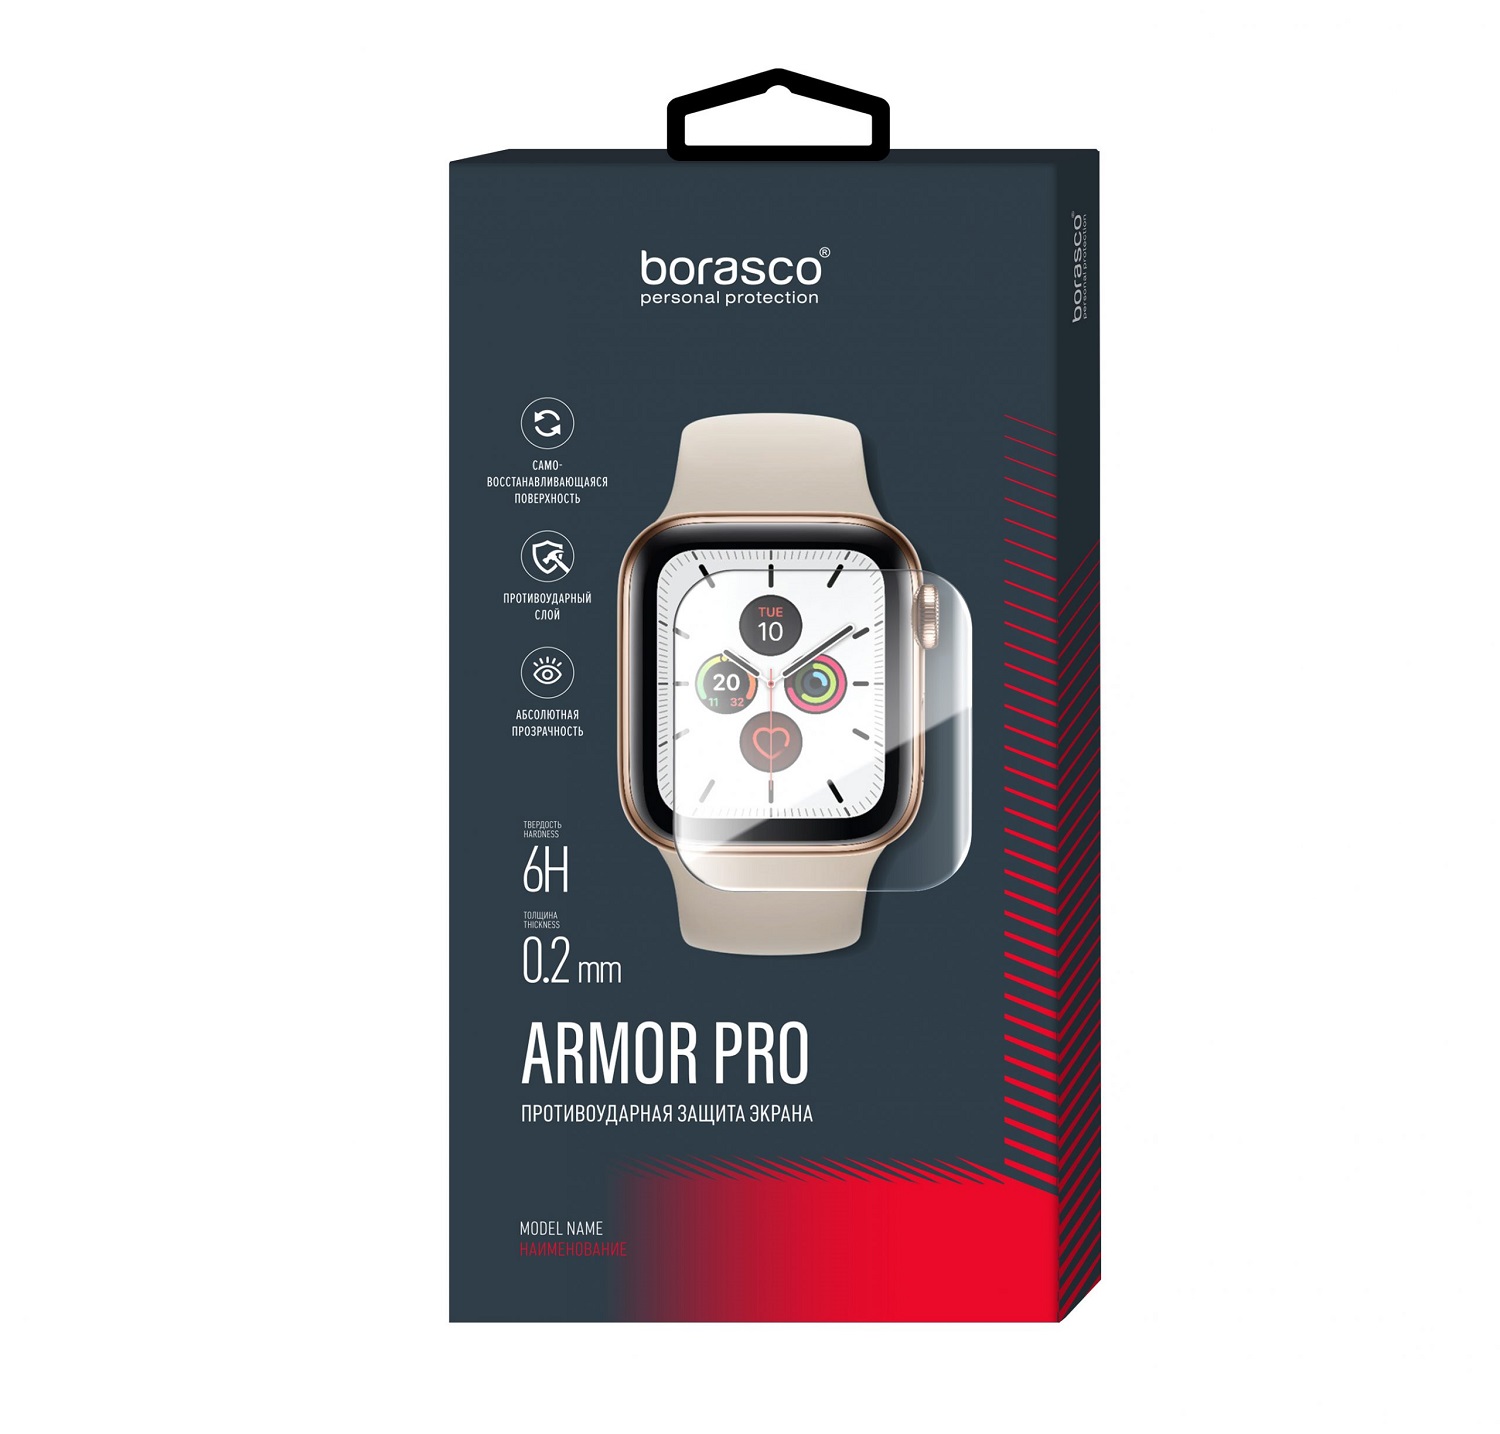 Защита экрана BoraSCO Armor Pro для Xiaomi Mi band 3 защита экрана borasco armor pro для honor band 3 матовый